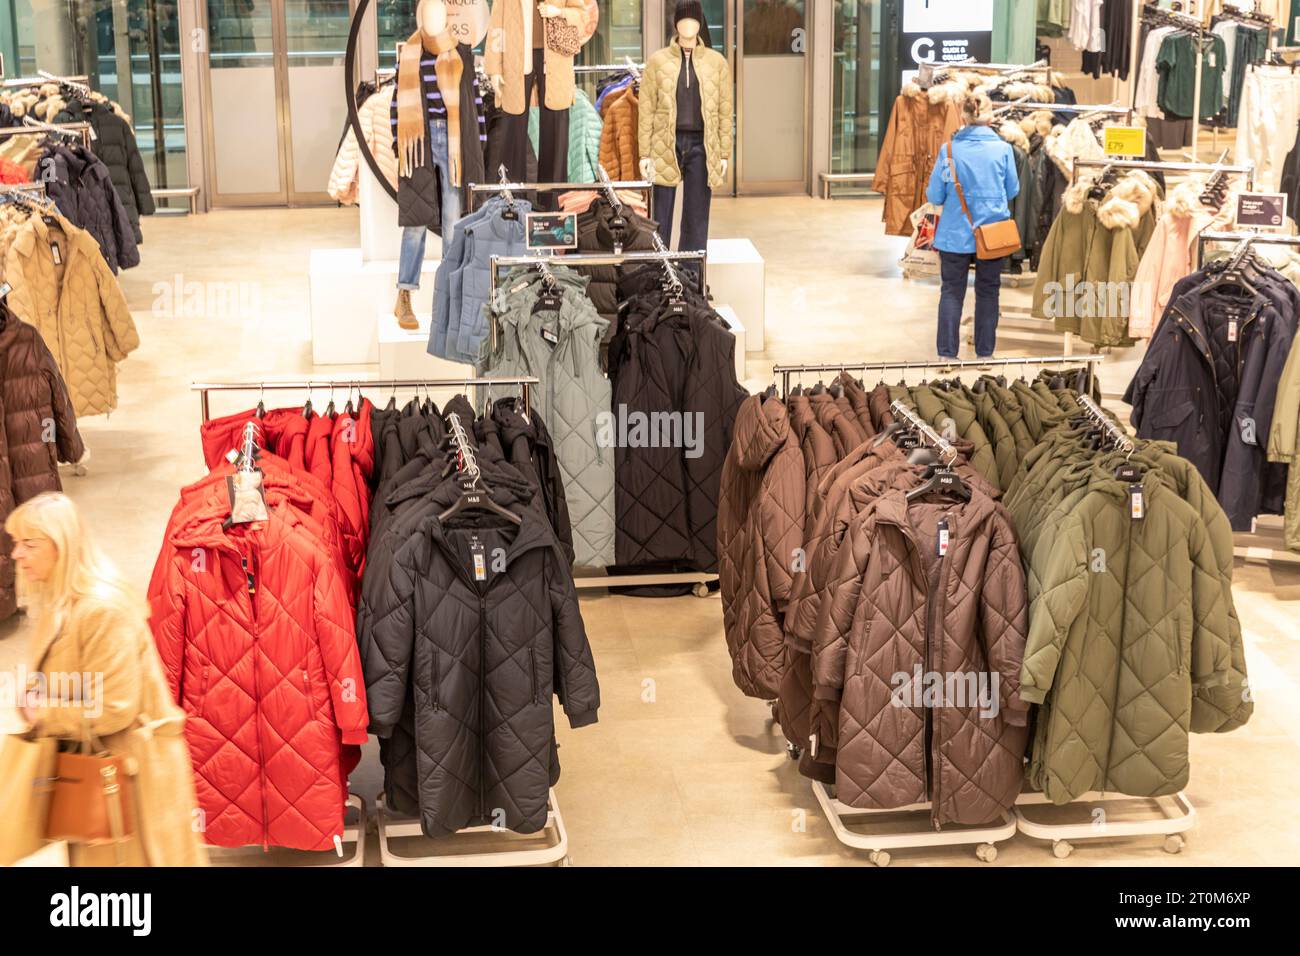 Marks and Spencer magasin intérieur, vêtements pour femmes et manteaux d'hiver à vendre comme deux femmes parcourez les vêtements, Manchester, Angleterre, Royaume-Uni, 2023 Banque D'Images